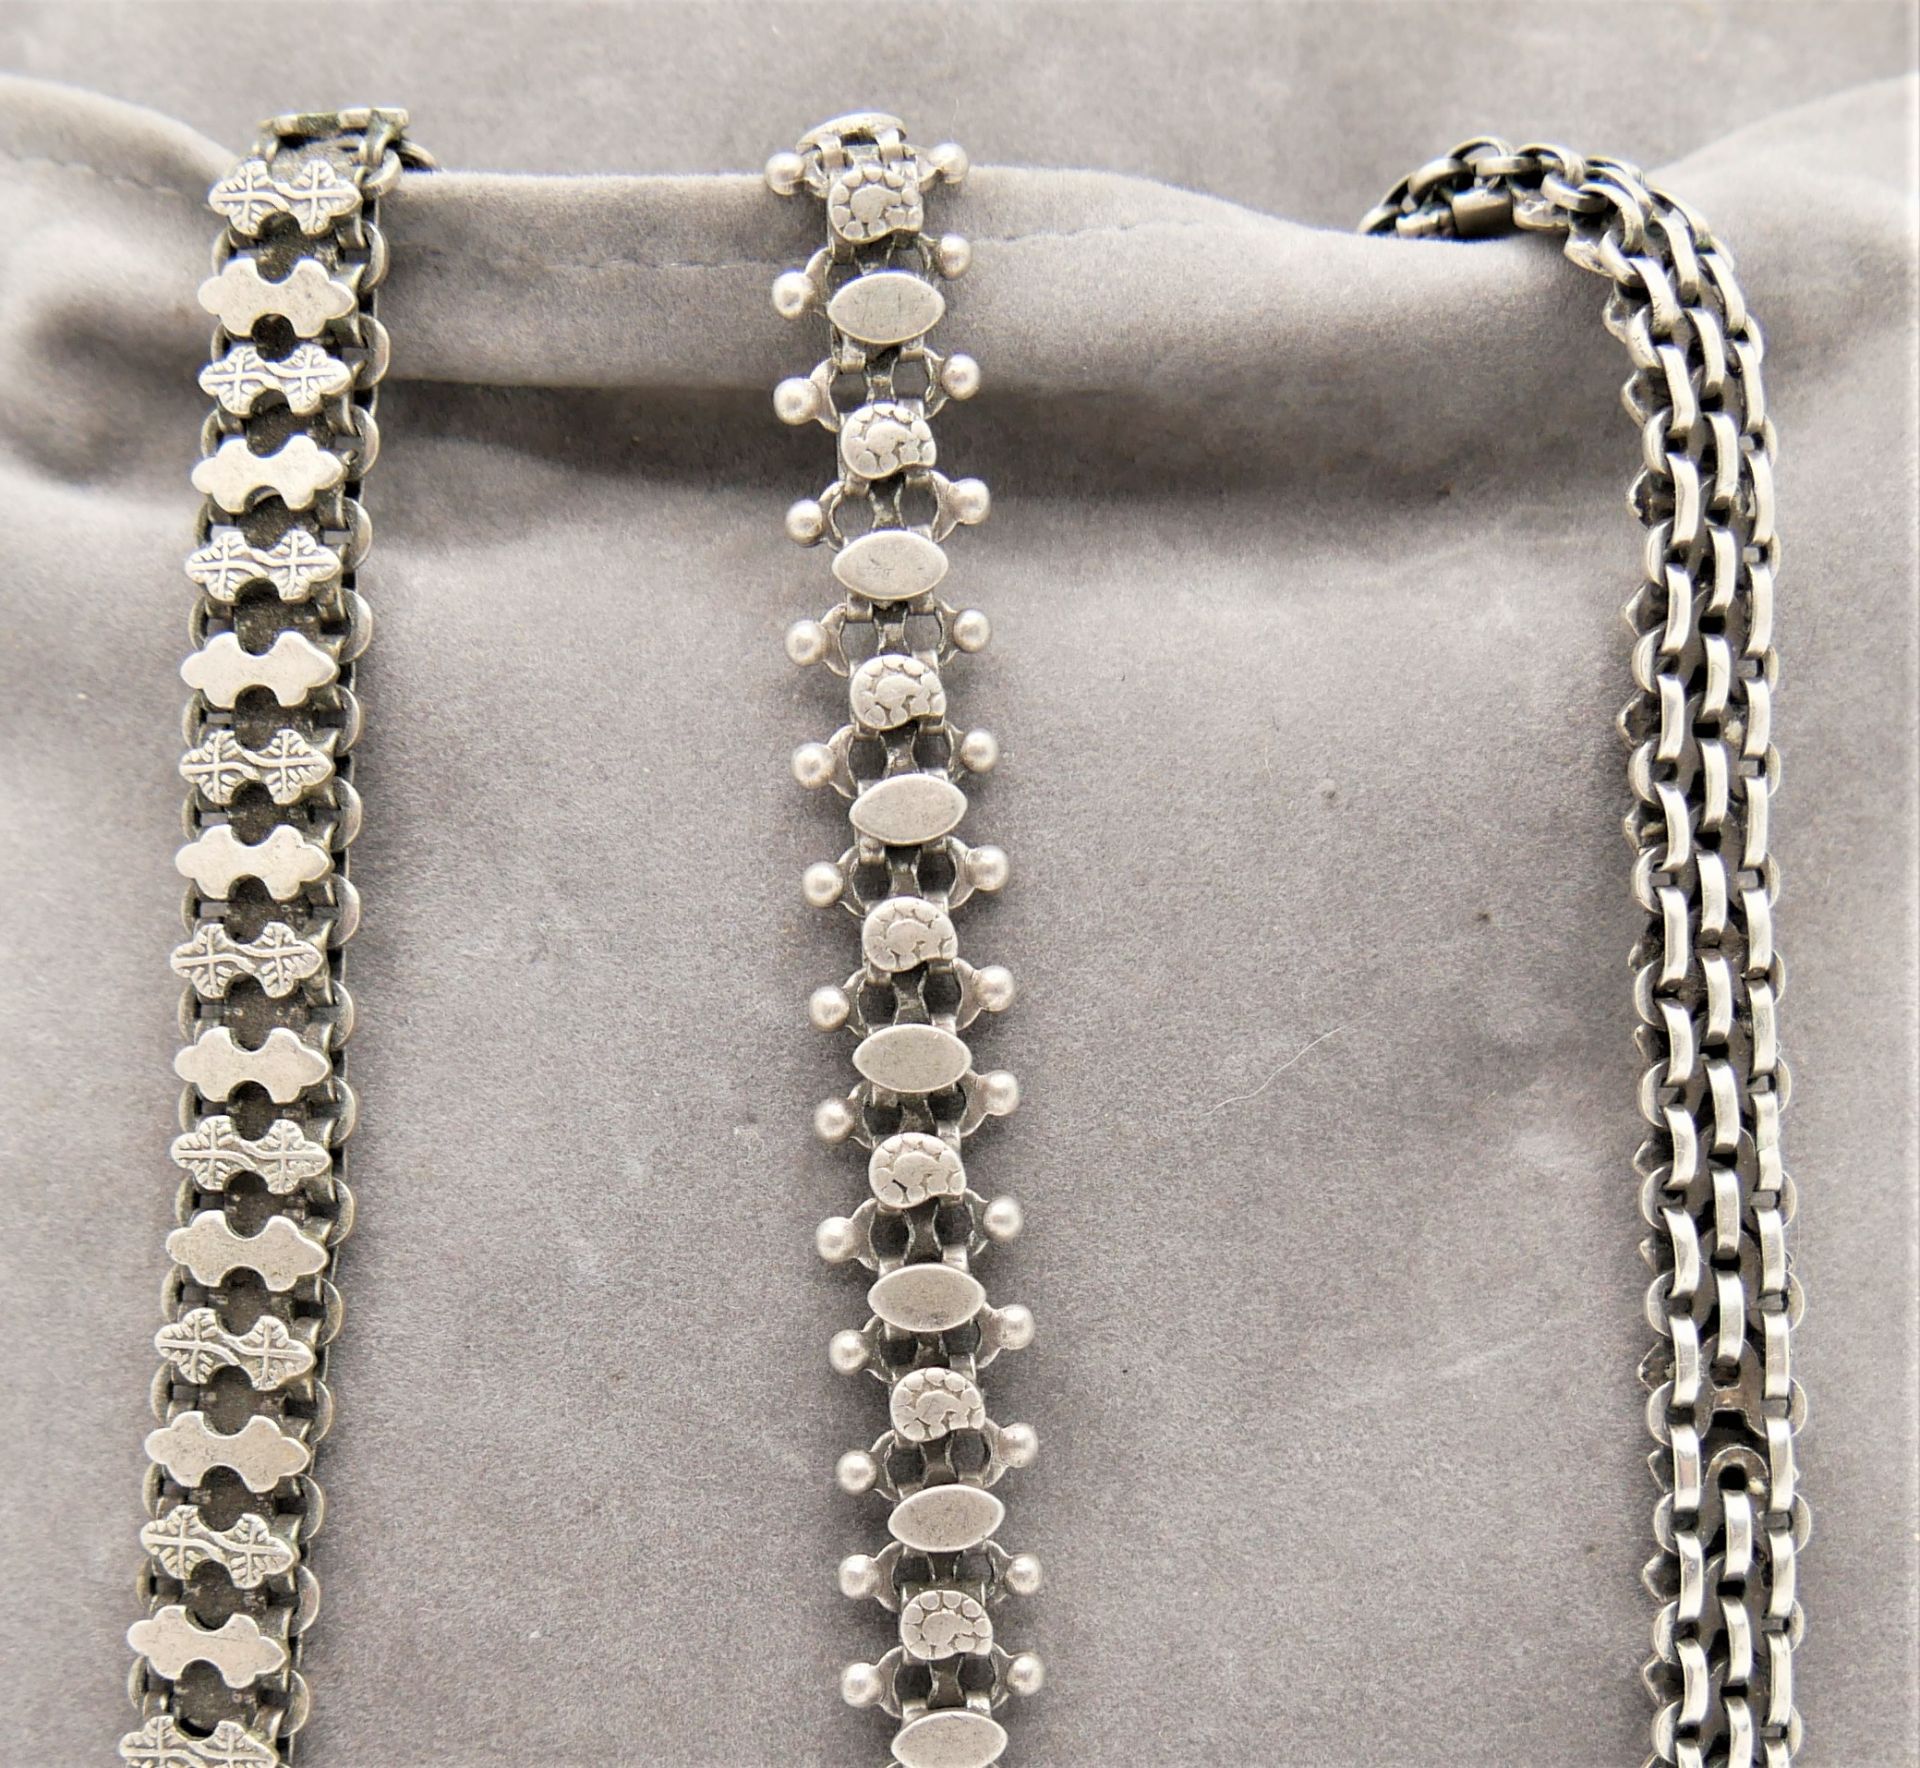 Lot Silberschmuck, bestehend aus 3 massiven Armbändern, Silber geprüft. Länge bis 25 cm - Bild 2 aus 2